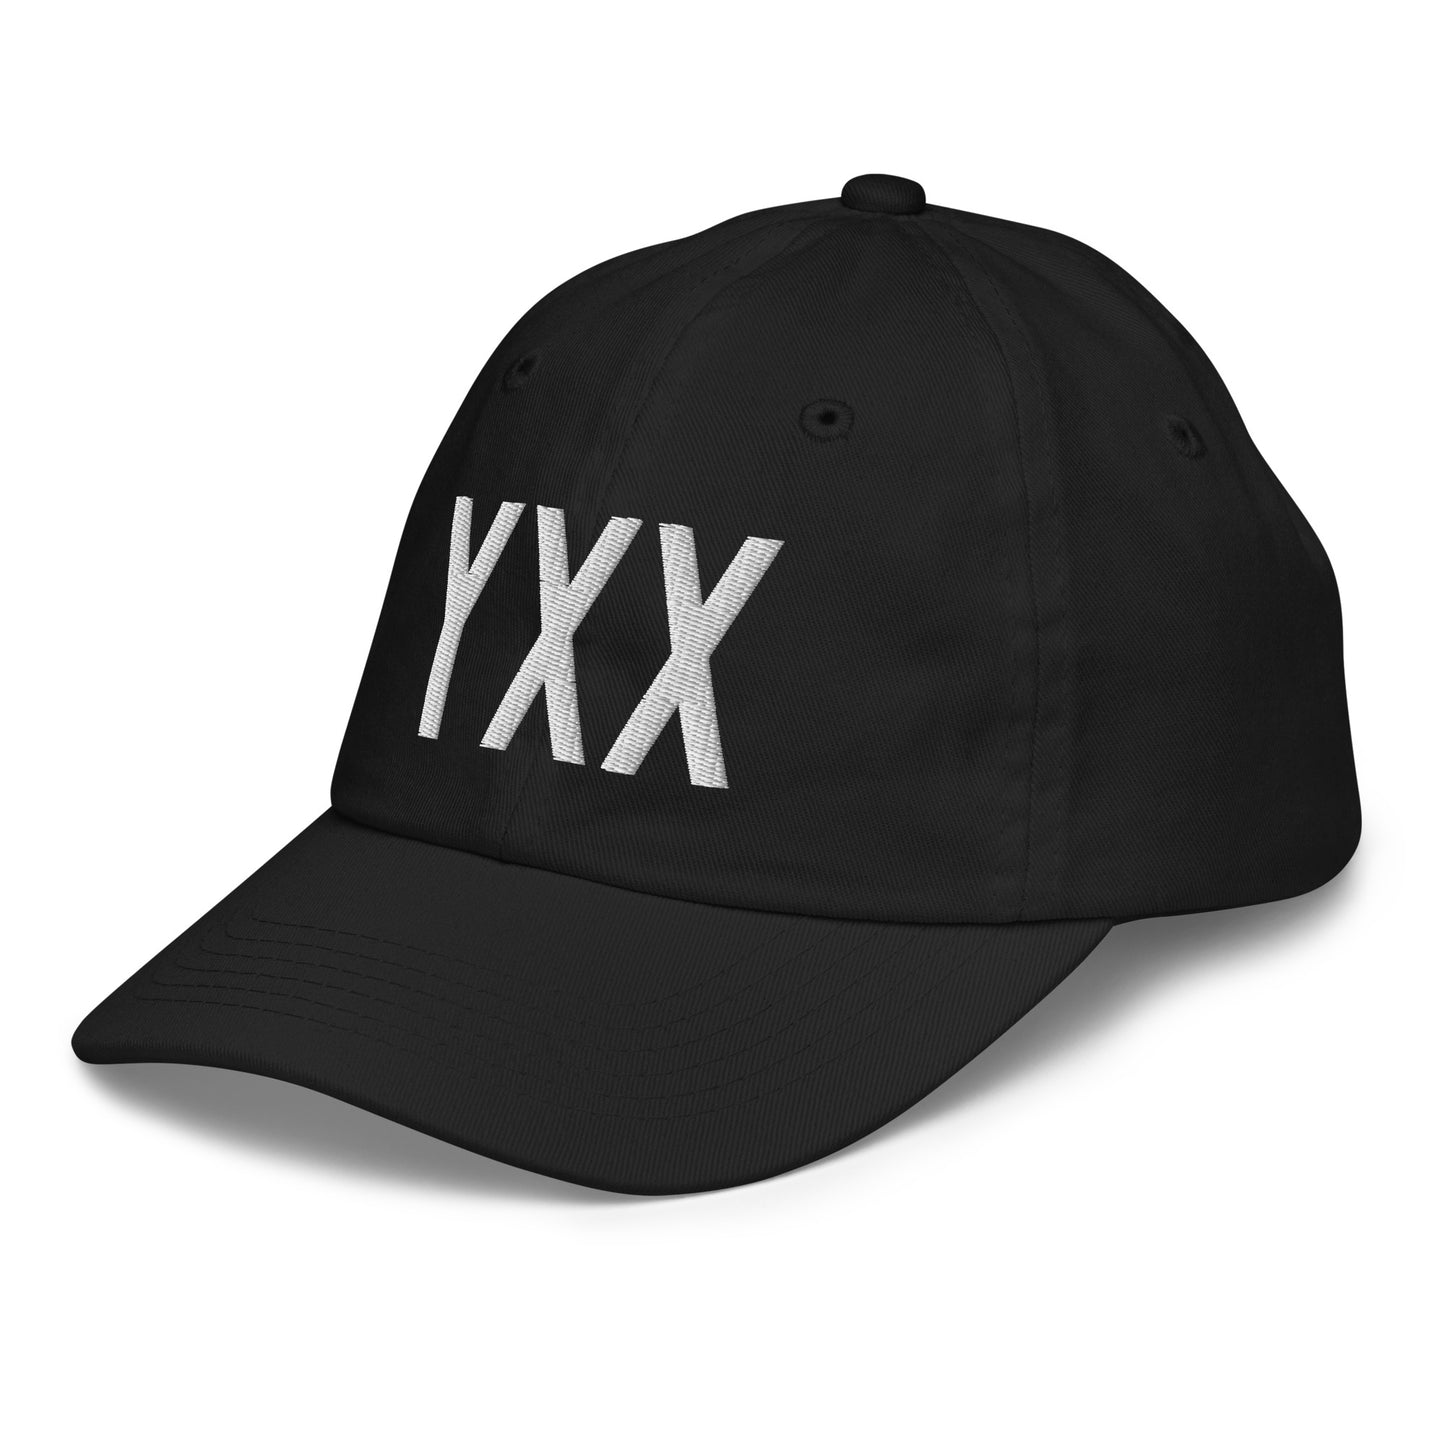 Airport Code Kid's Baseball Cap - White • YXX Abbotsford • YHM Designs - Image 13